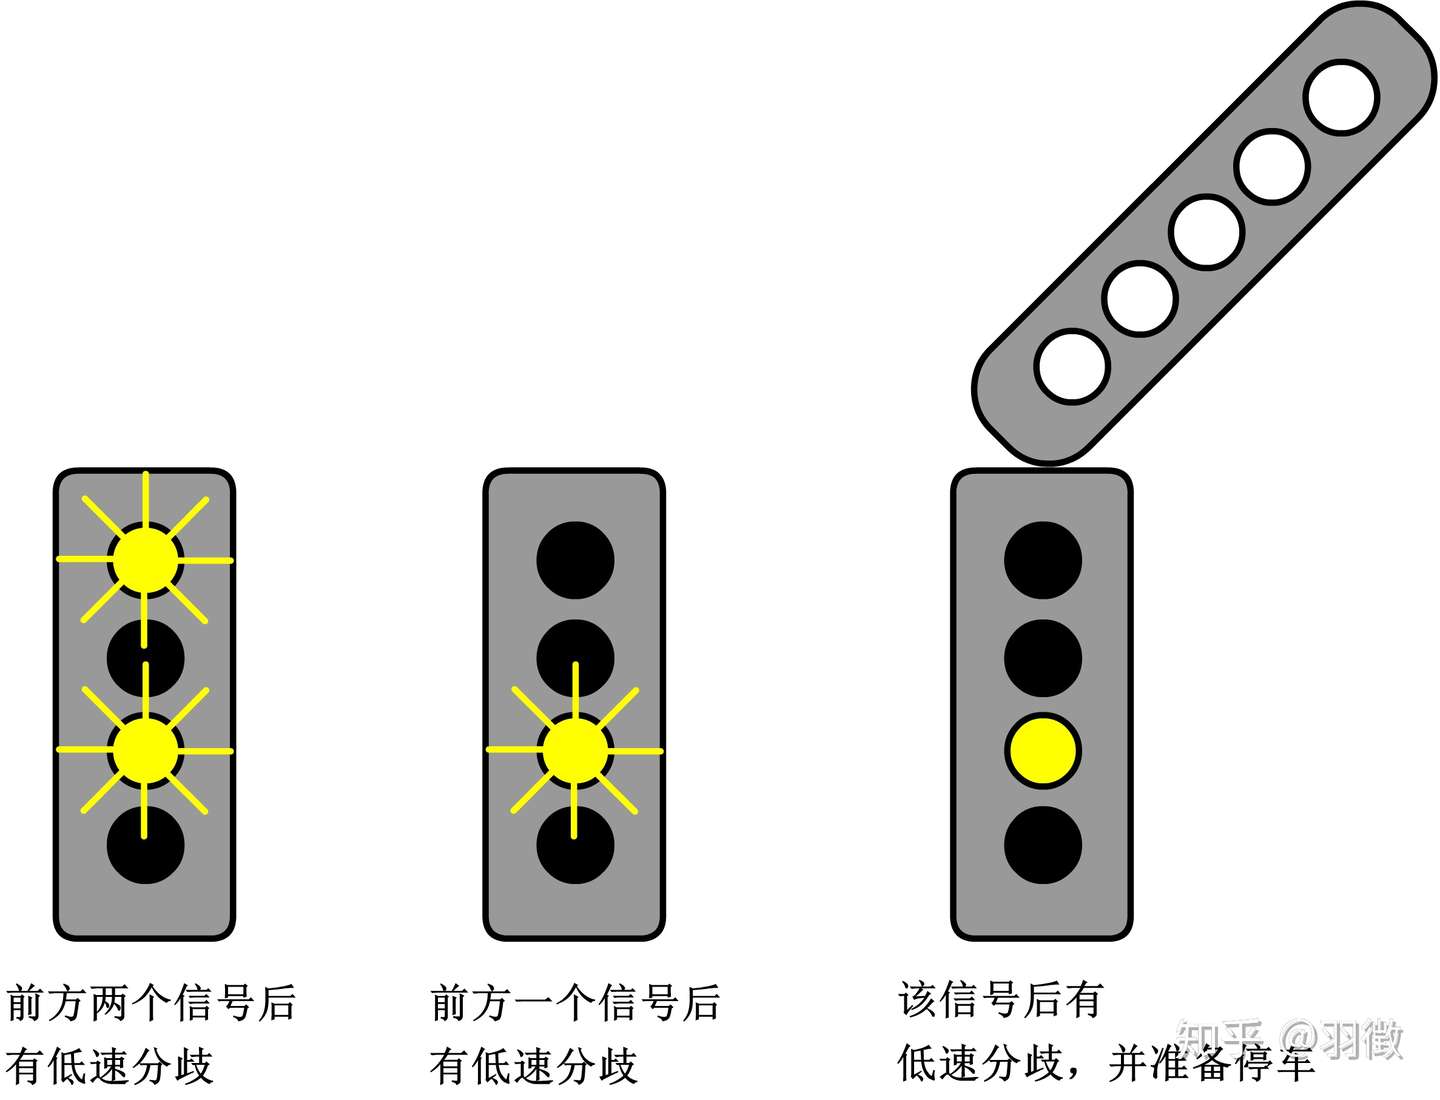 固定闭塞式铁路行车信号之表示意义 兼谈普速线再一次改新信号的必要性 知乎